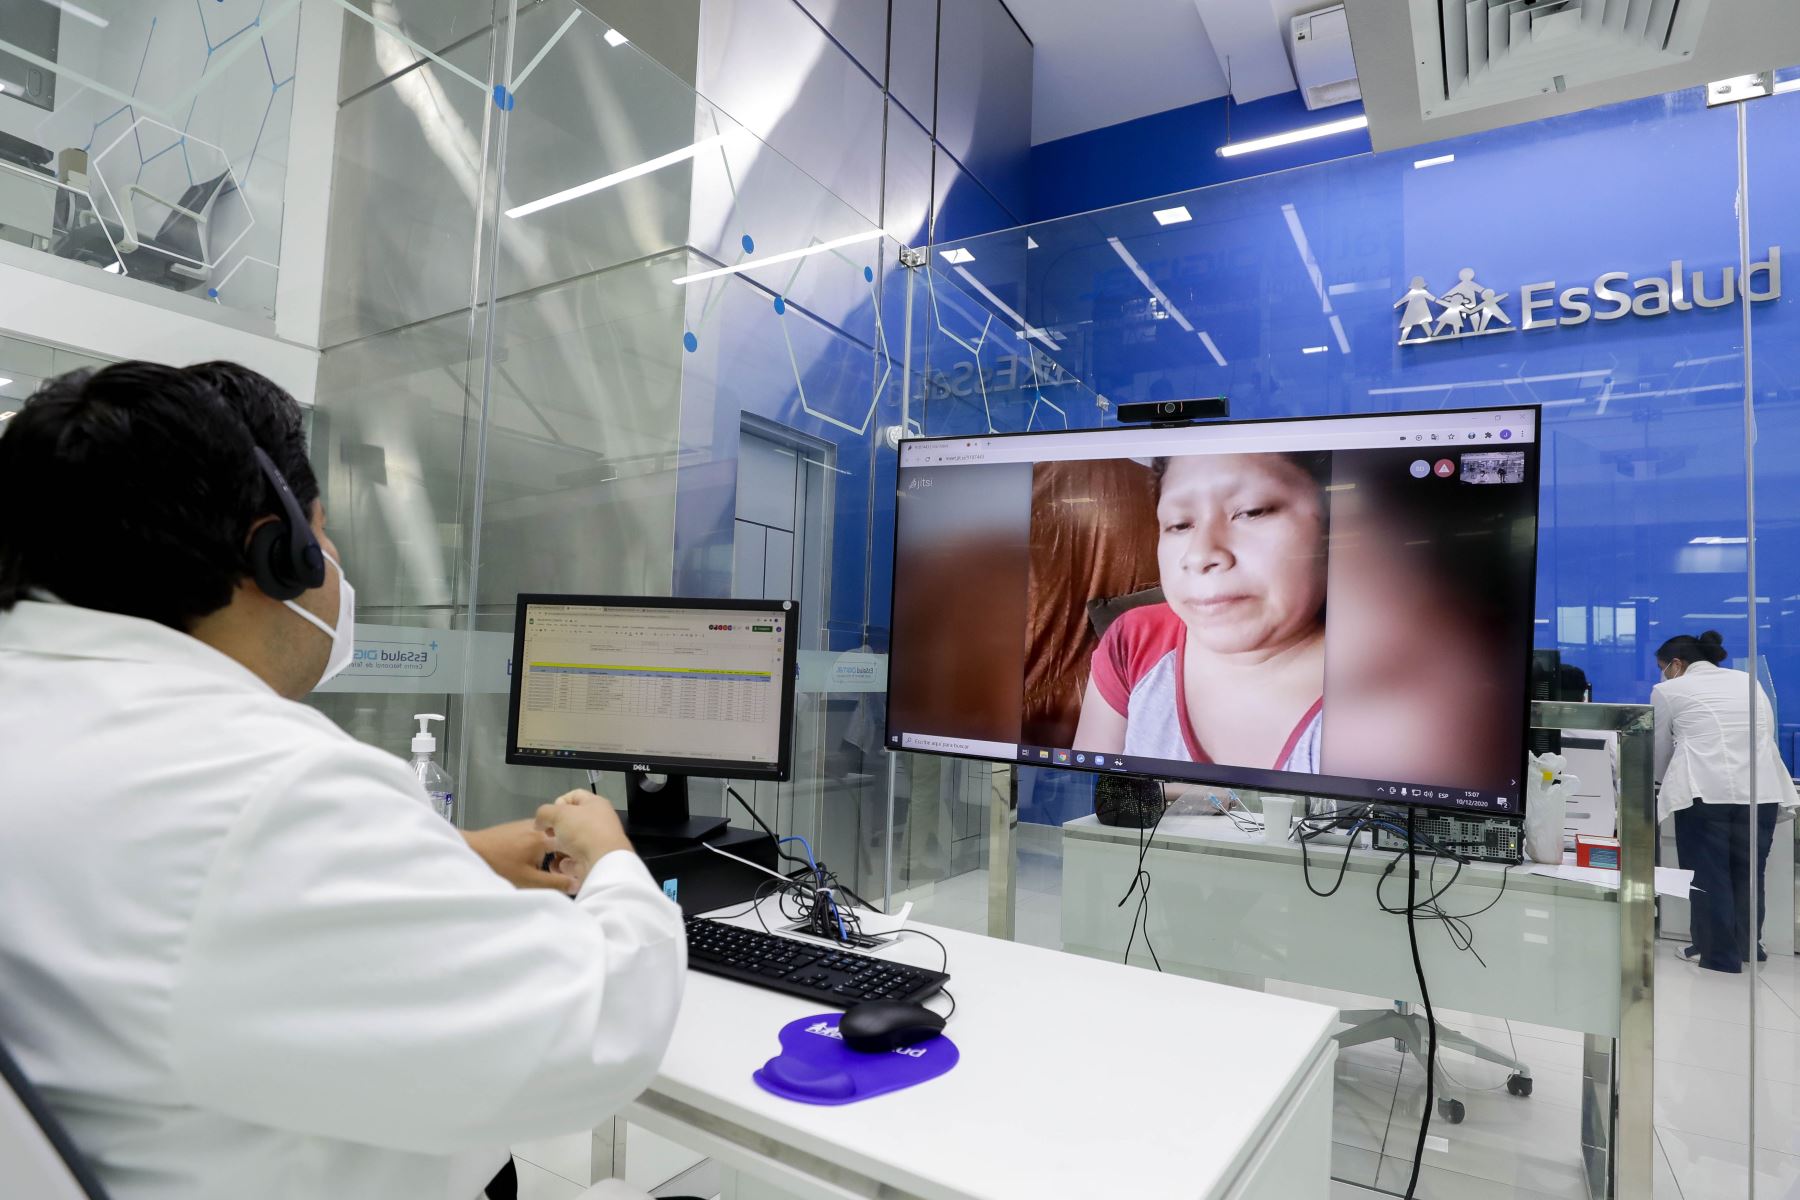 En junio se logró record de teleconsultas registrando casi 160 mil atenciones virtuales en más de 20 especialidades médicas, desde distintas regiones del país.